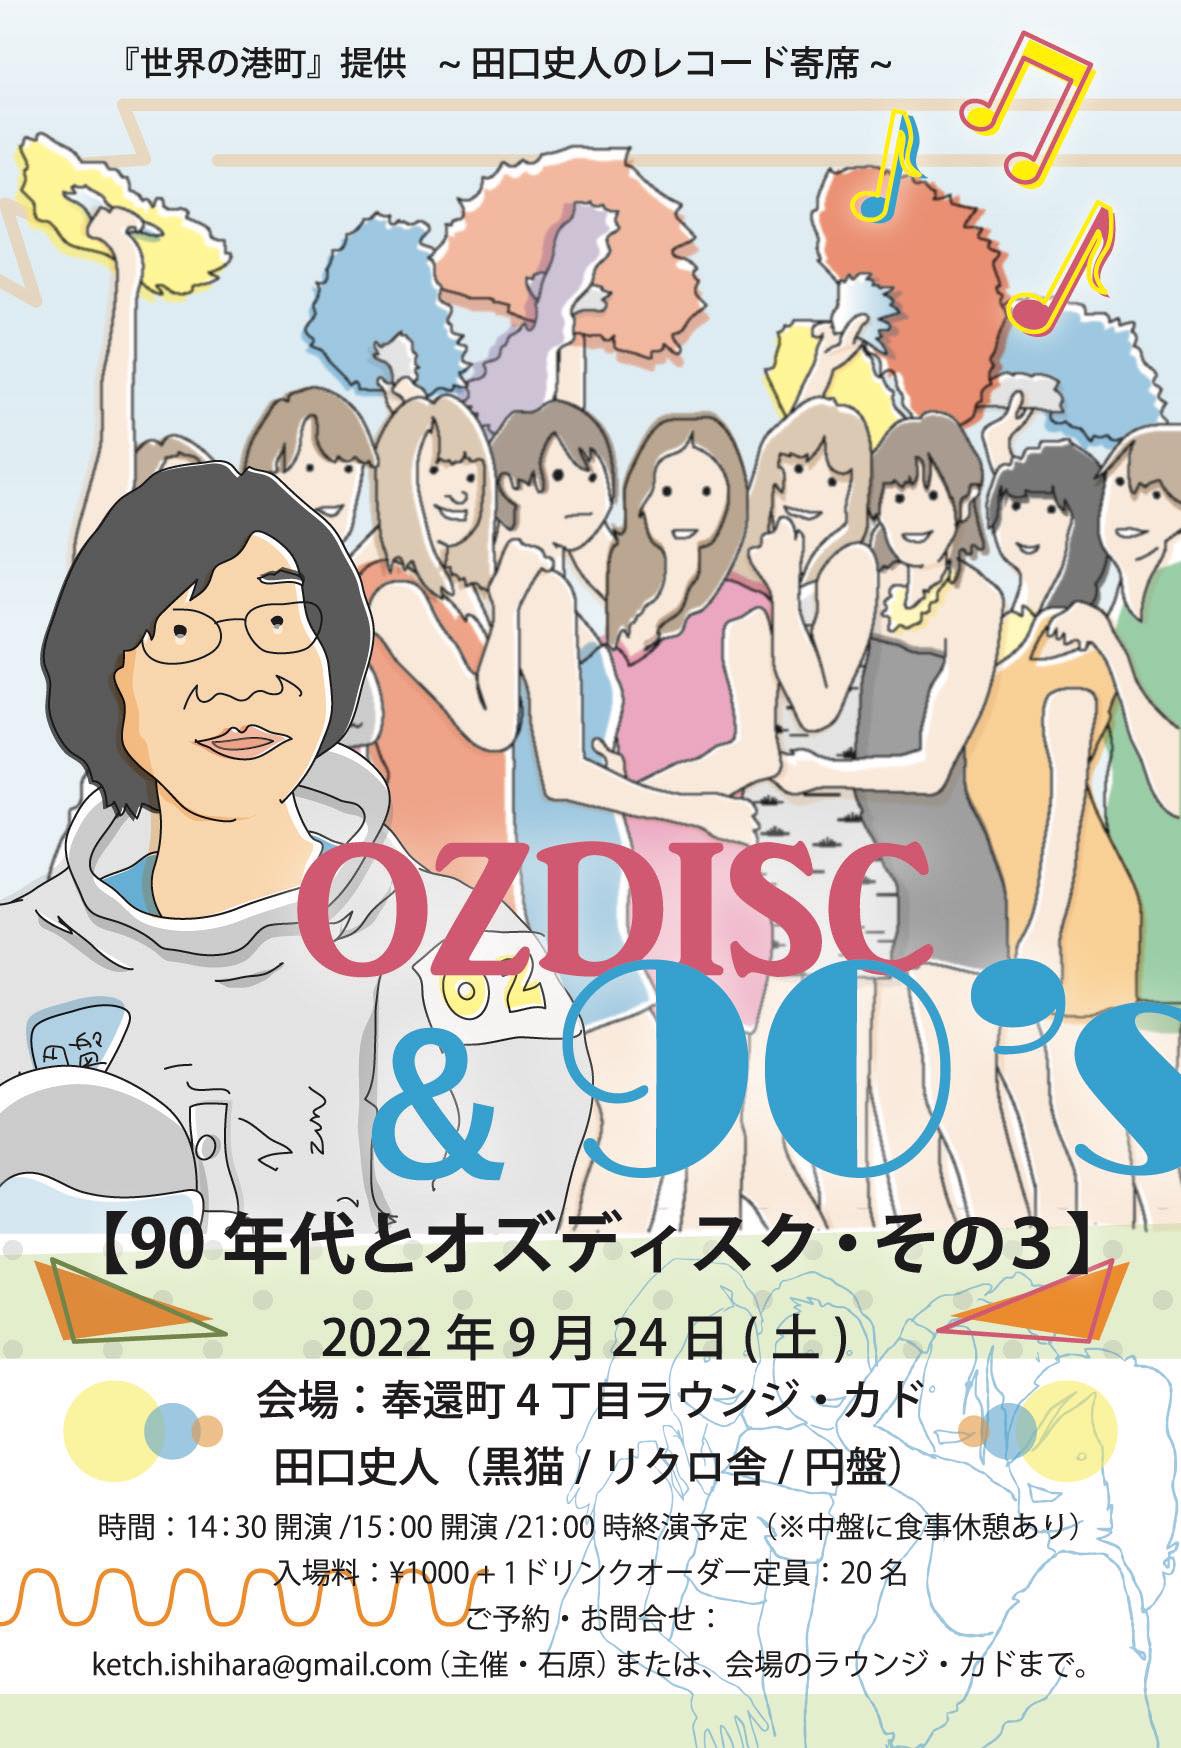 OZ DISC はっぴいえんどかばあぼっくす CD 邦楽 CD 邦楽 ジャパン公式 